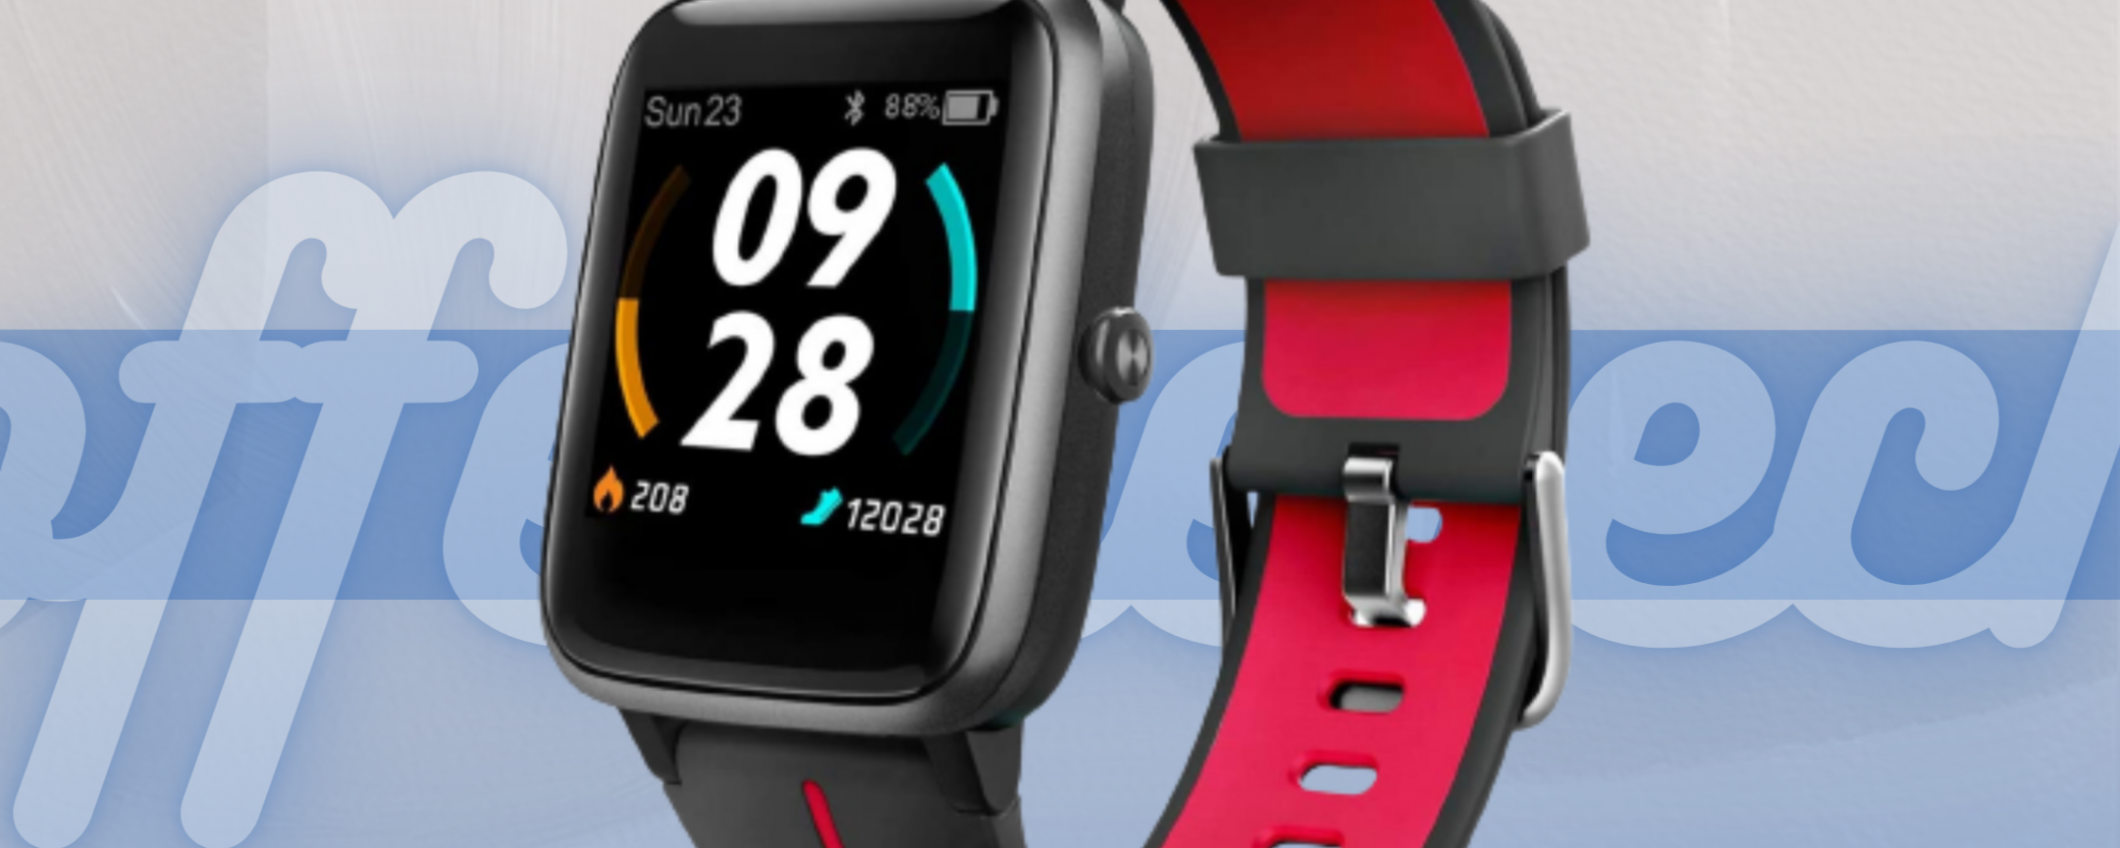 Smartwatch moderno a prezzo bassissimo: è su Amazon l'offerta